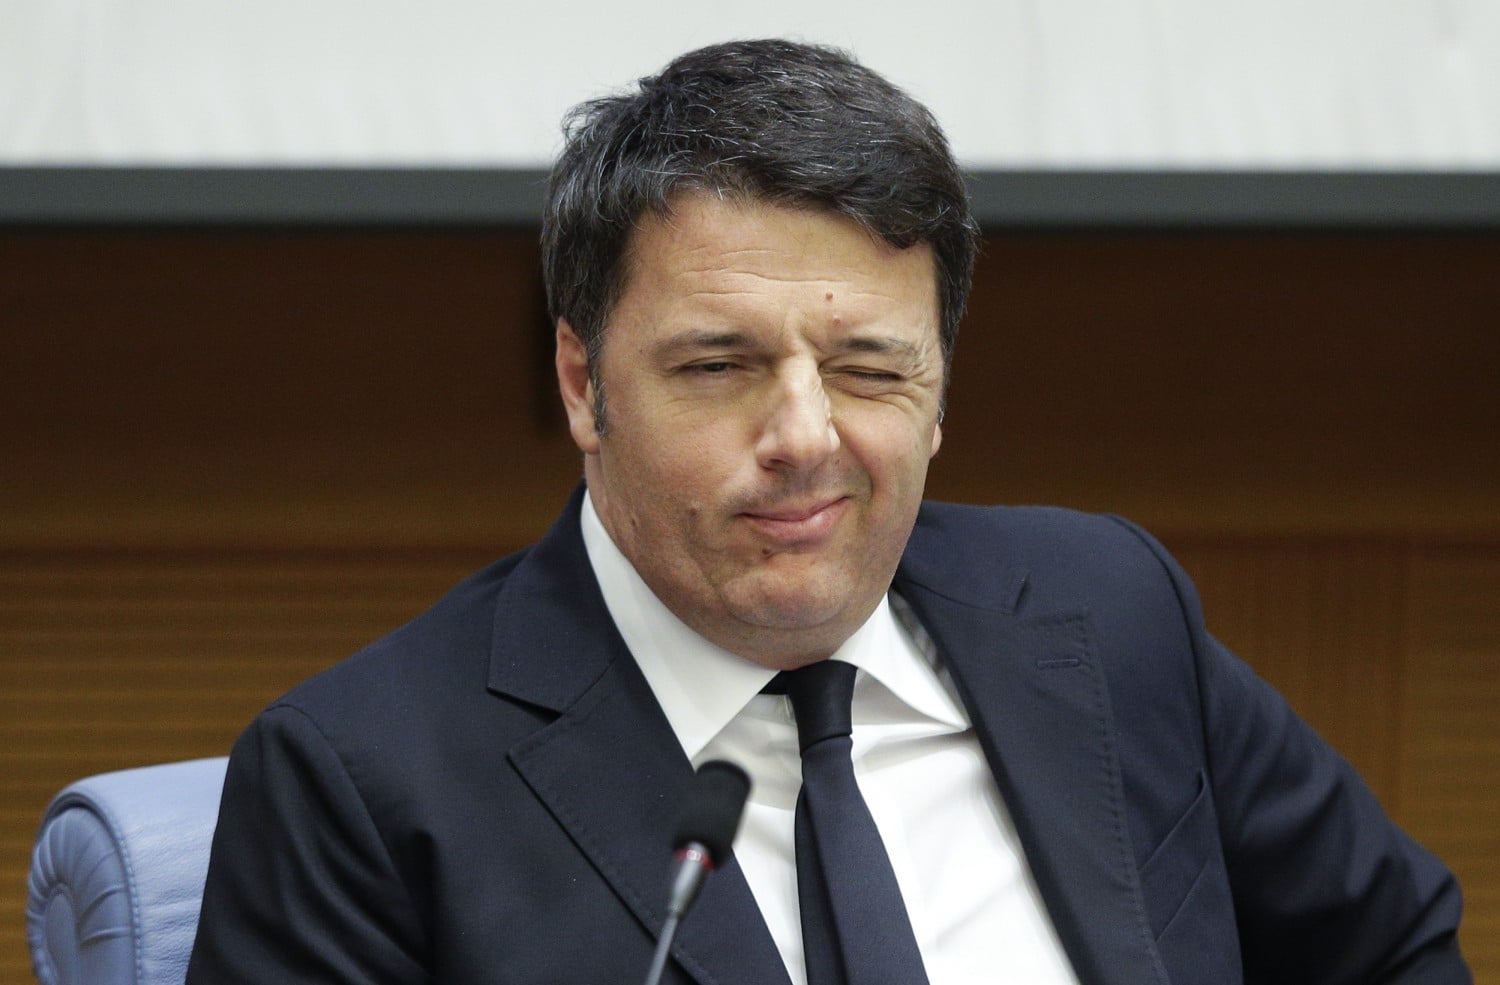 Conte oggi chiederà la proroga dello stato di emergenza fino al 31 ottobre <br> Renzi fa i balletti a cui ormai siamo abituati: prima si oppone e poi si allinea